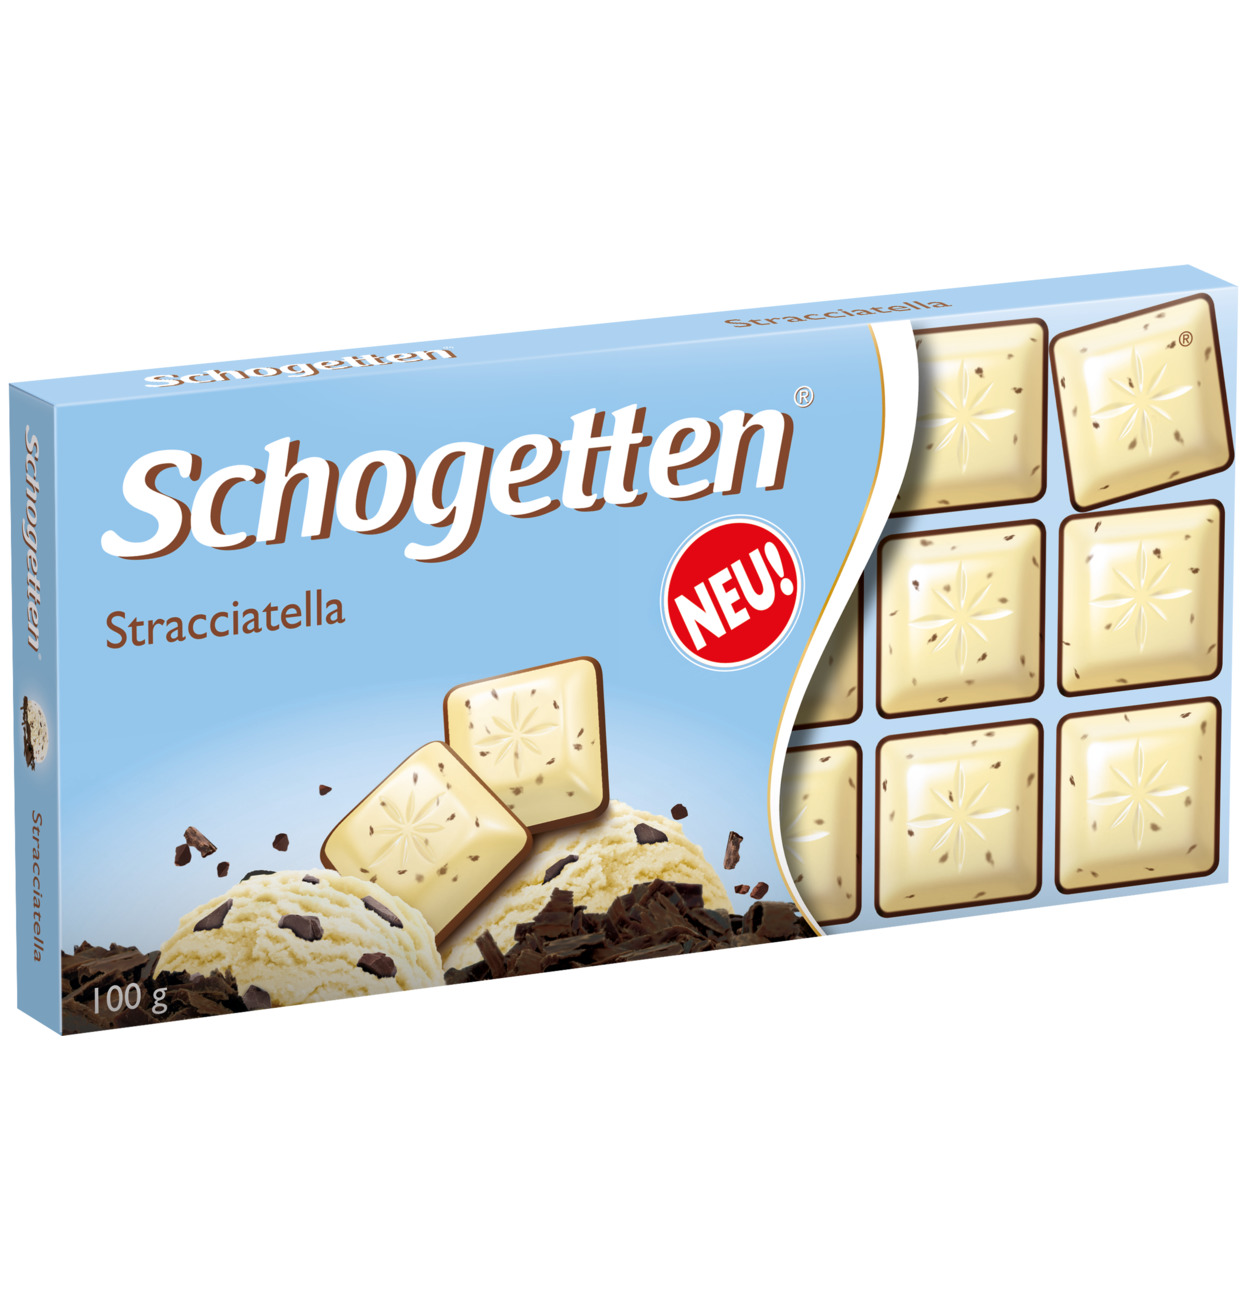 Schogetten шоколад со страчателлой 100 г